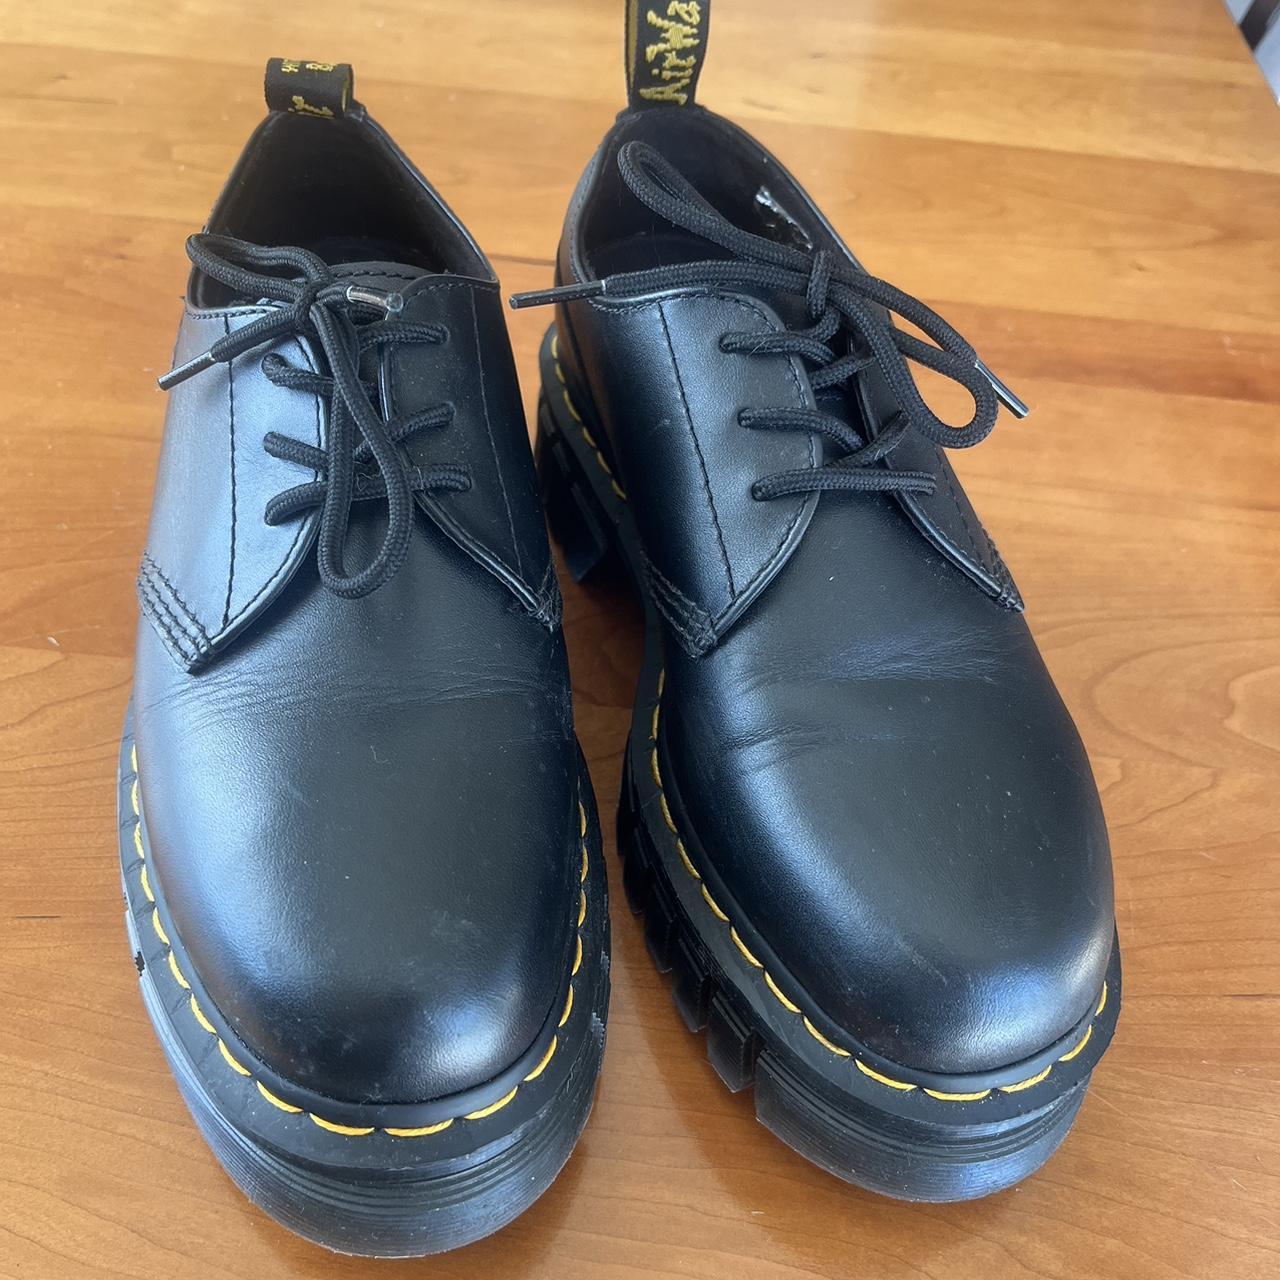 Dr. Martens 8053 Leather Platform Casual Shoes. Only... - Depop